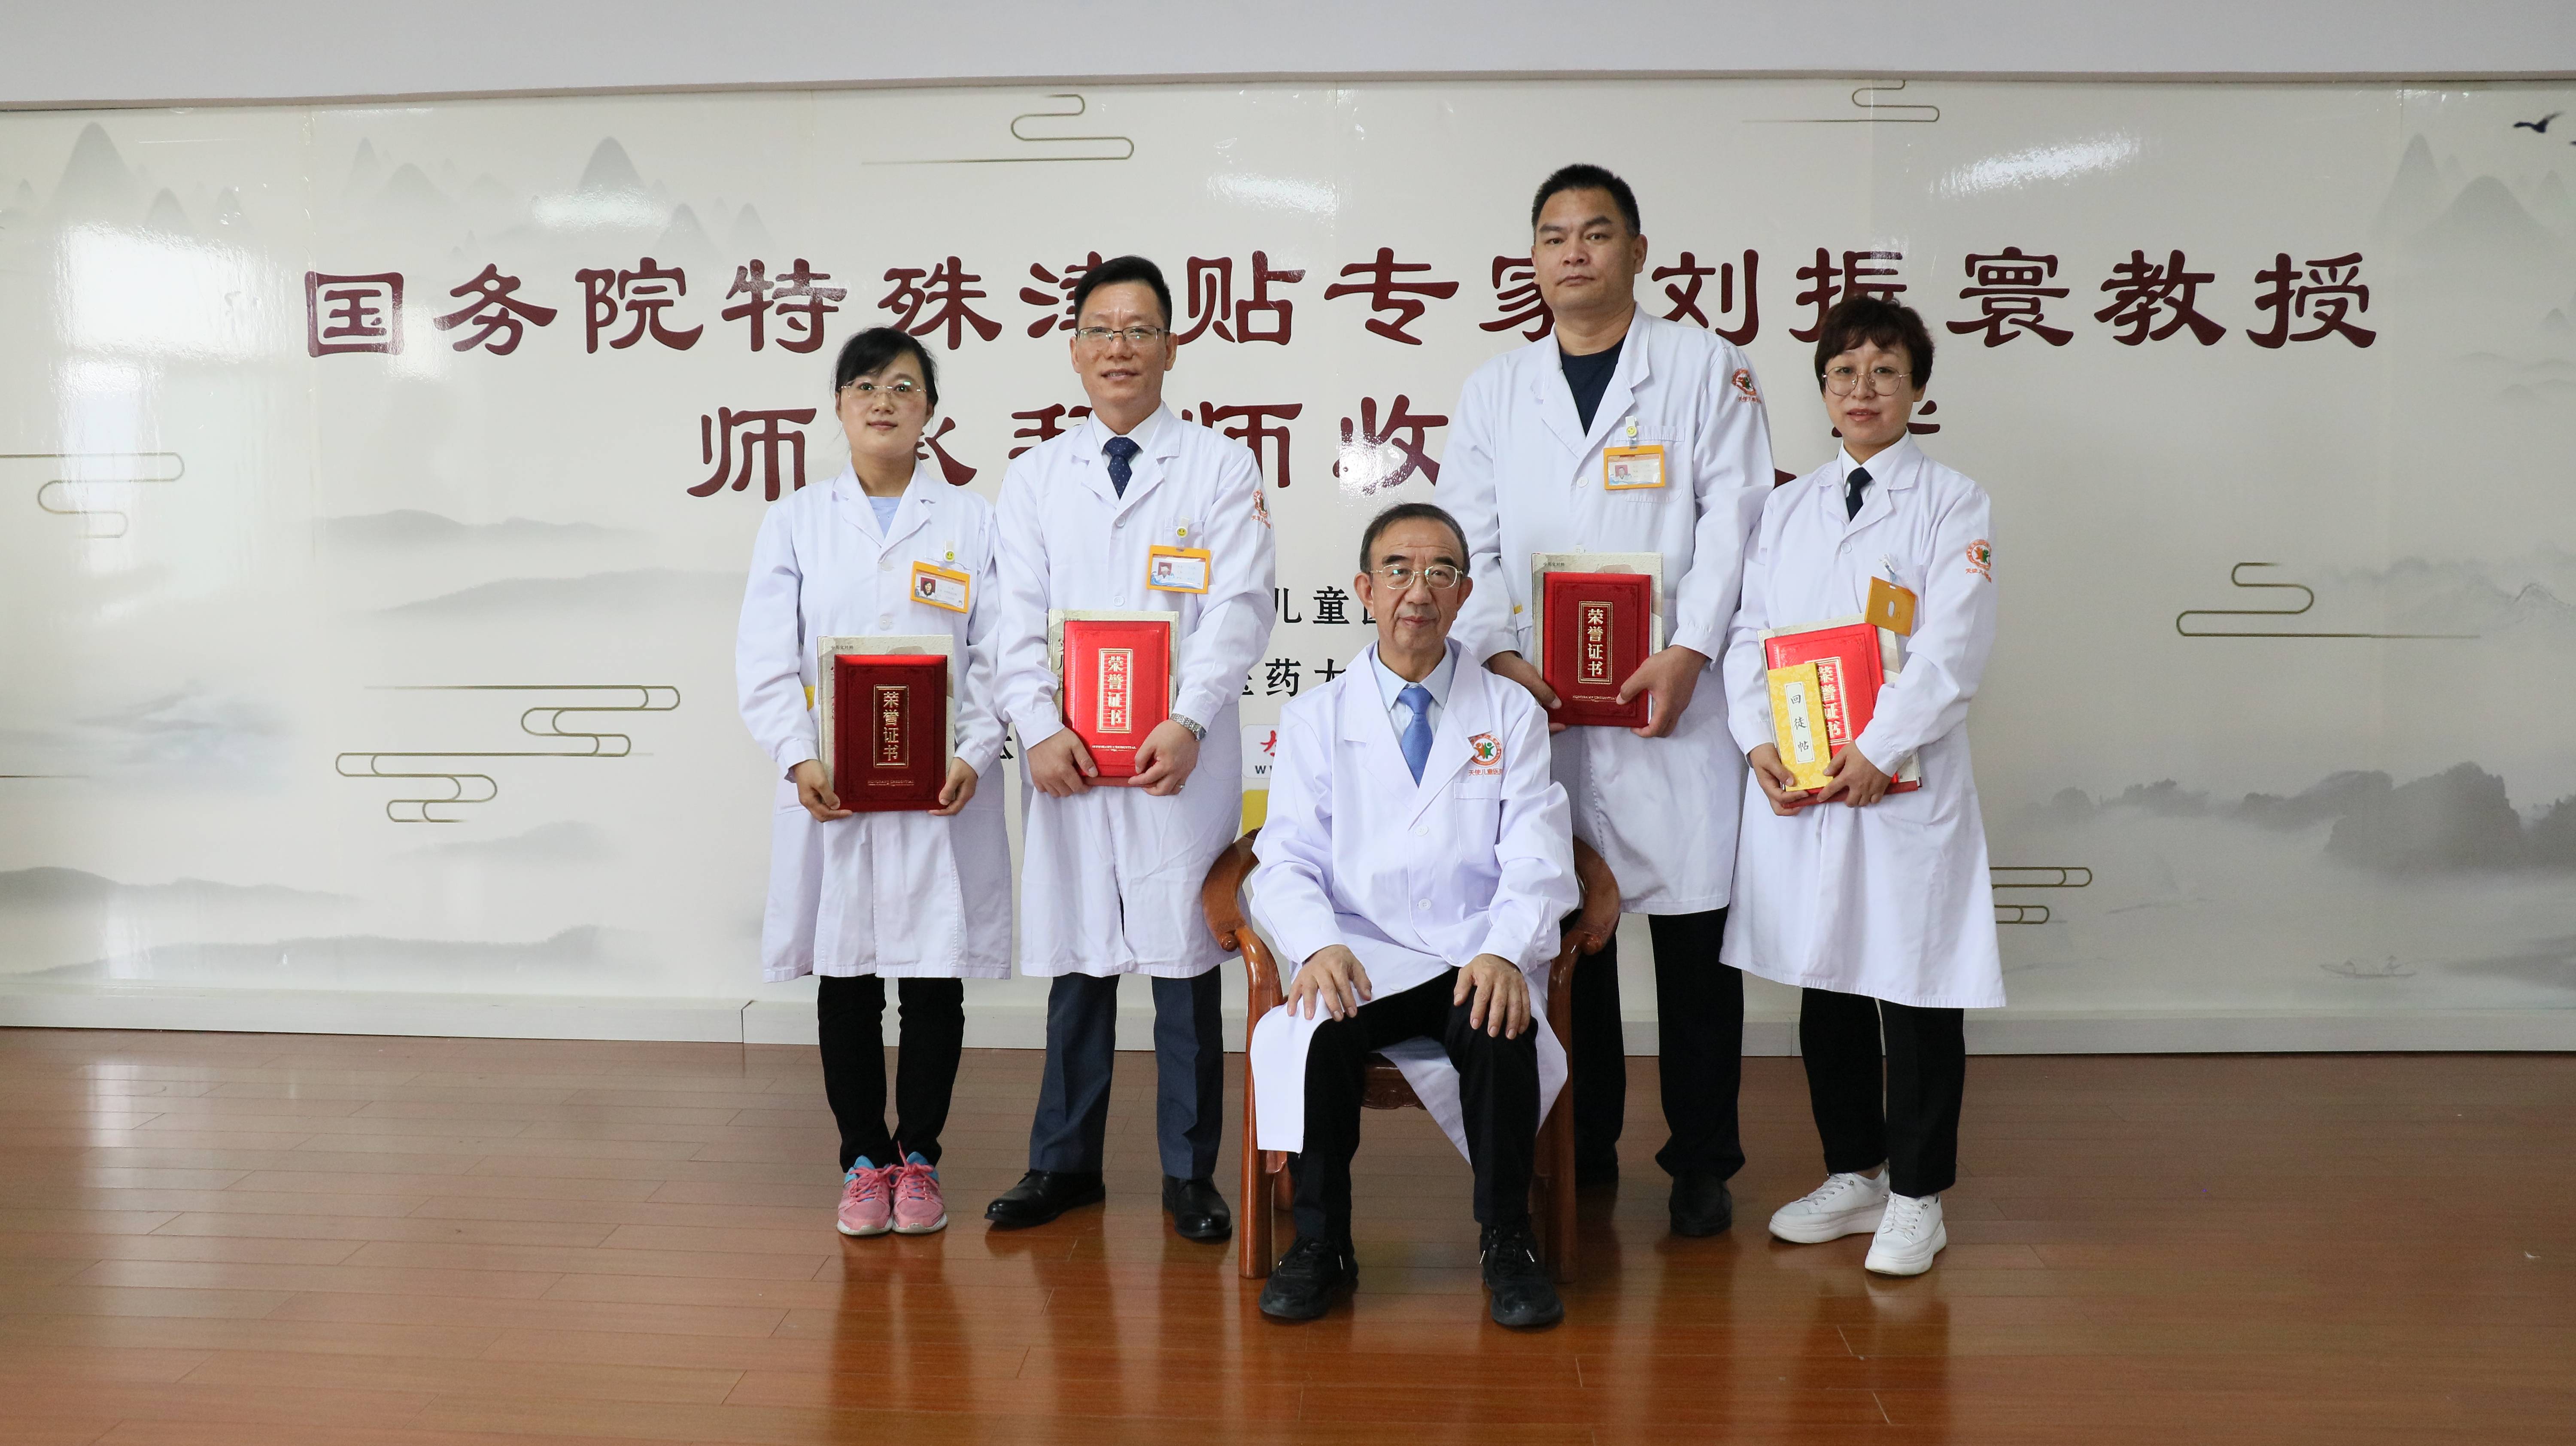 中医师承拜师收徒,弘扬传统针灸医术,推进儿童康复技术的发展